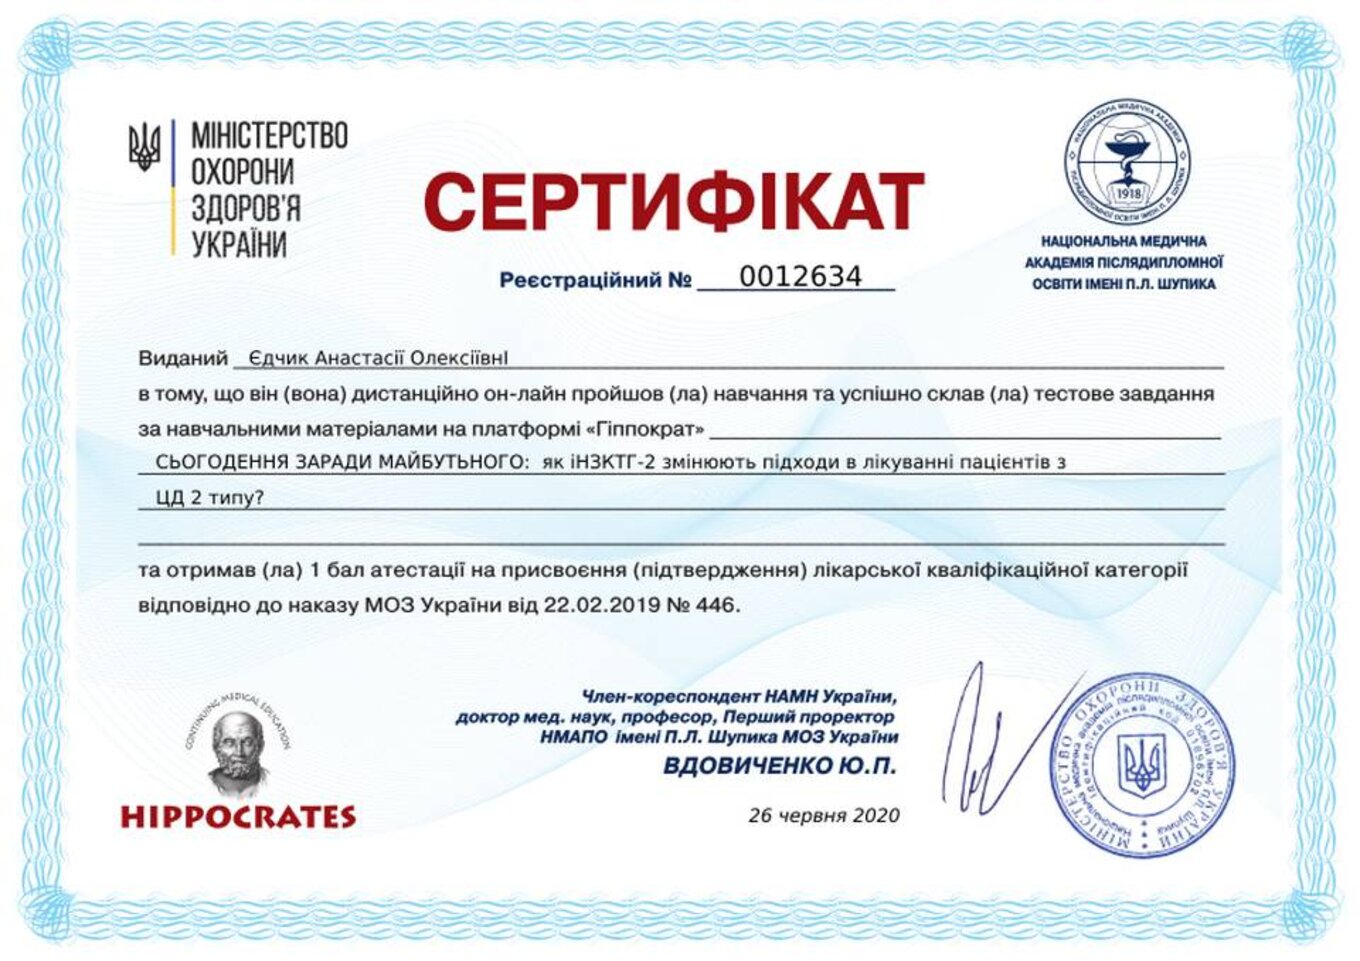 certificates/yedchik-anastasiya-oleksiyivna/erc-edchik-cert-70.jpg